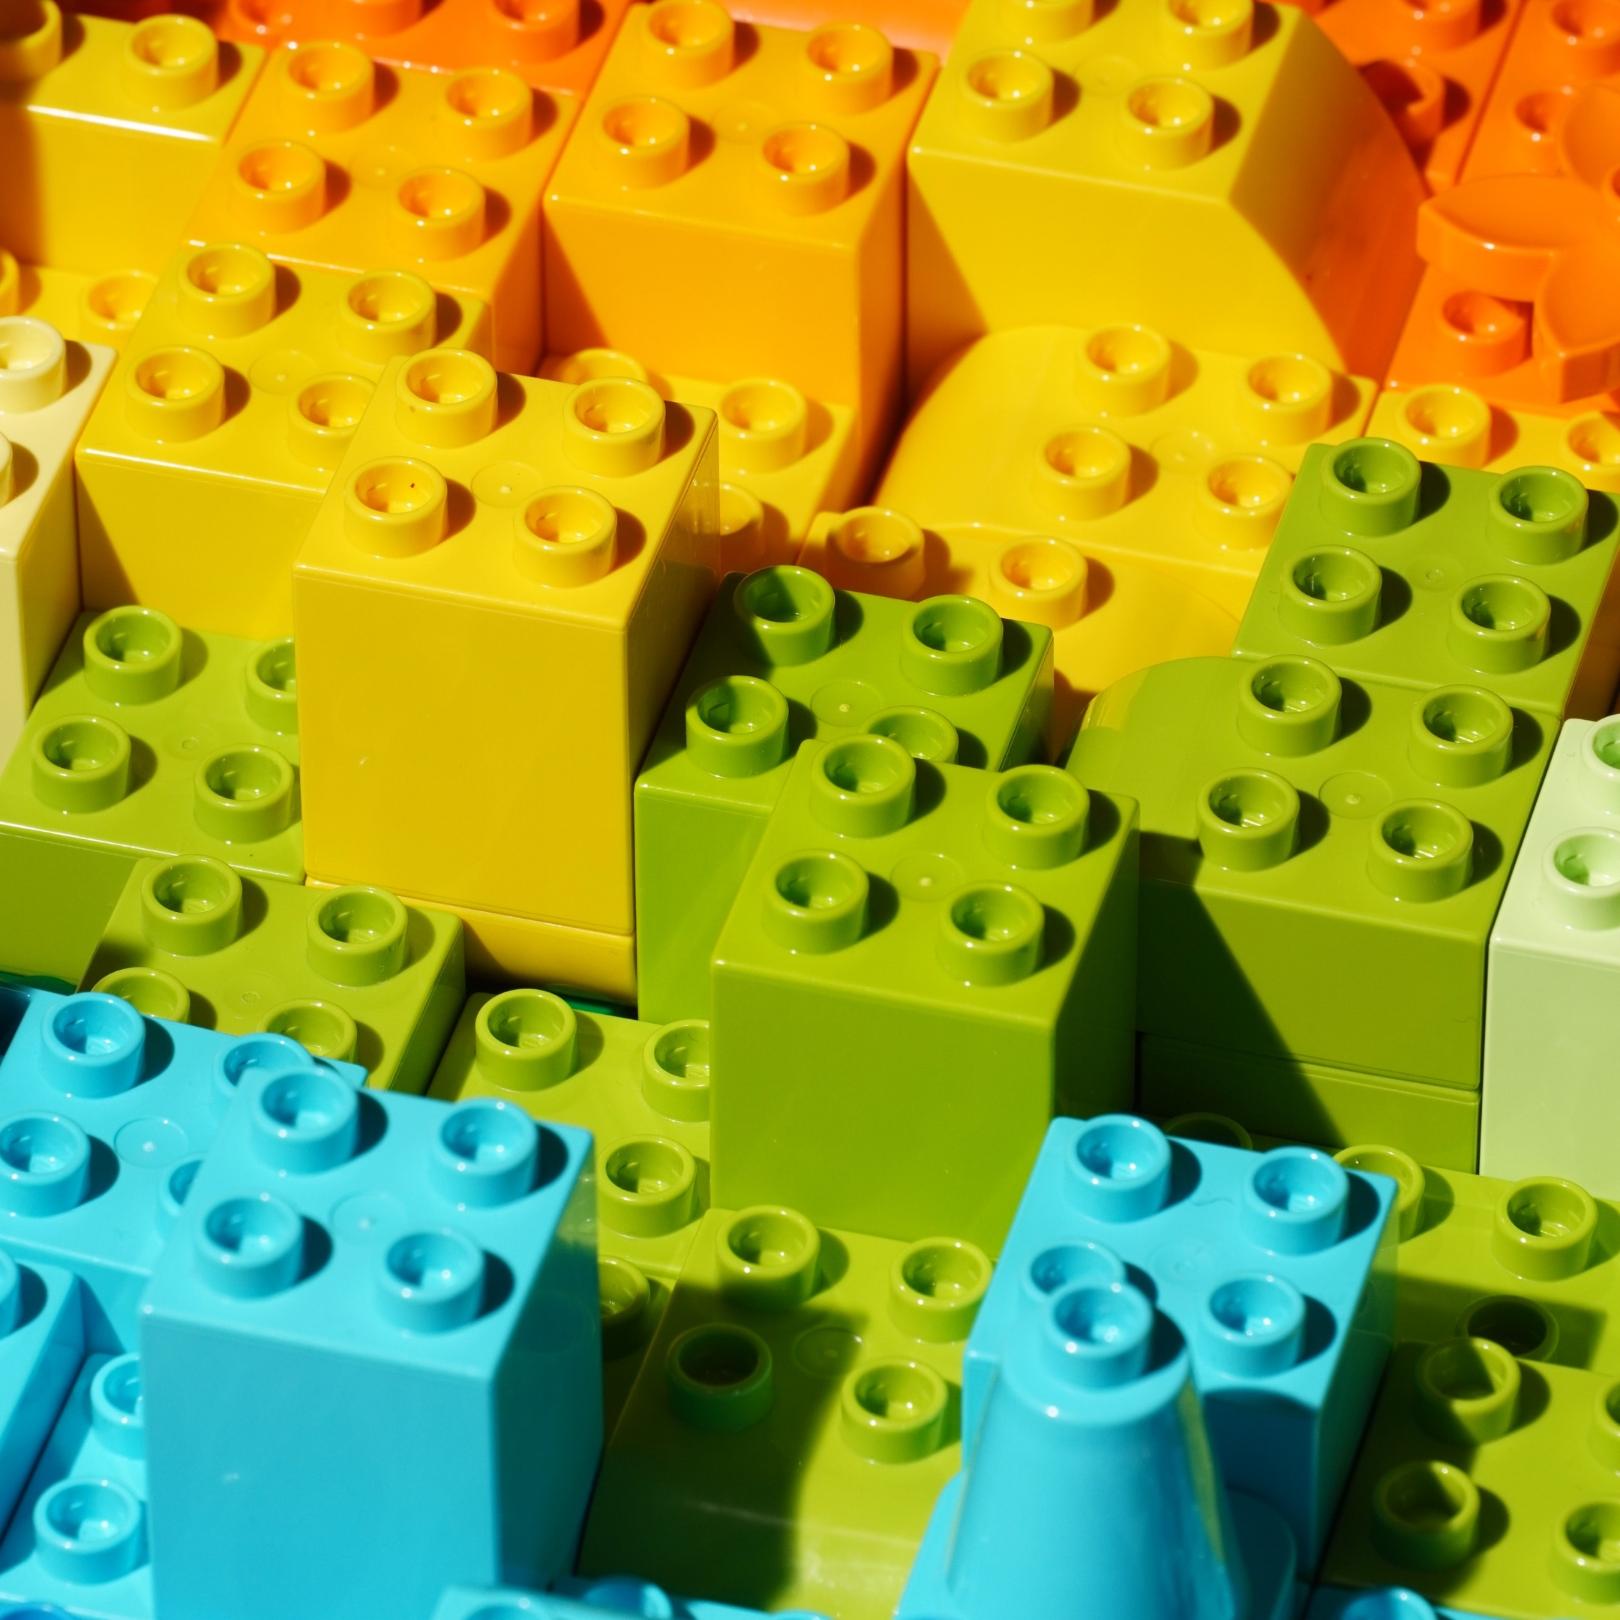 Lego-Steine - sen-rgP93cPsVEc-unsplash (c) Sen on Unsplash